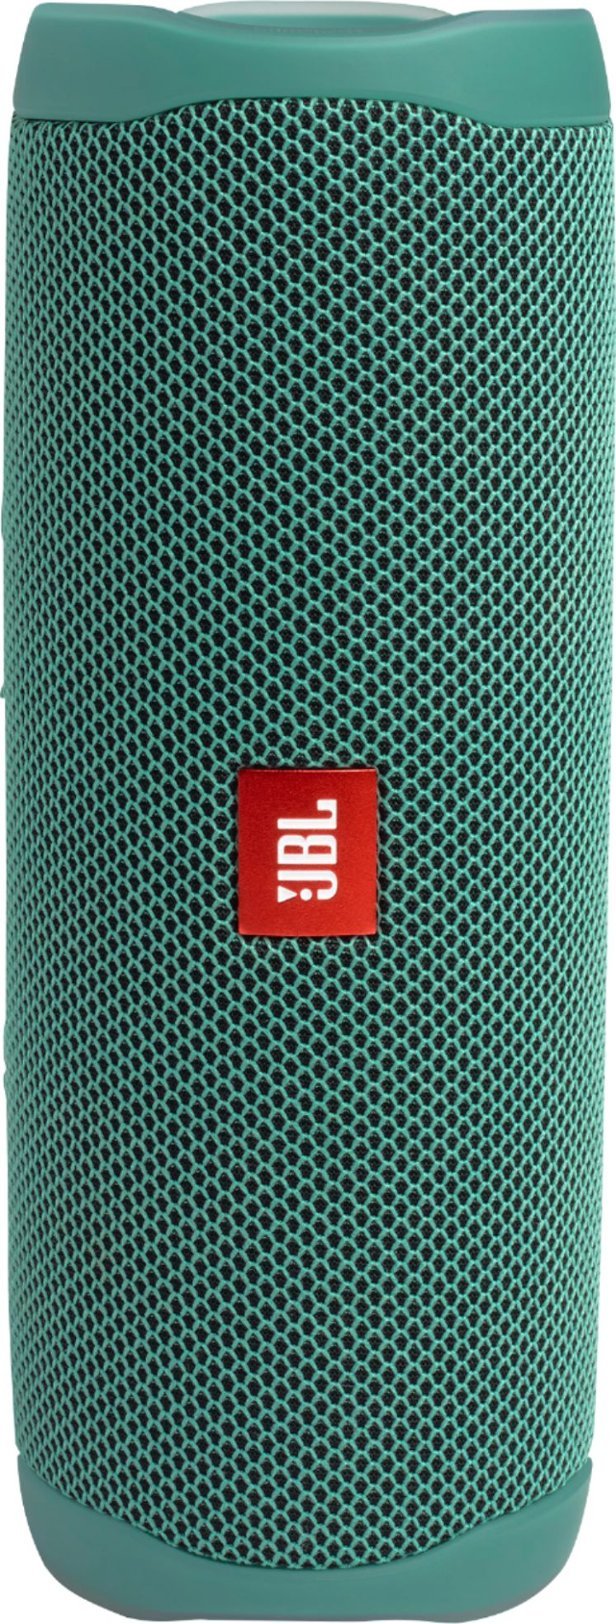 JBL Flip 5 Waterproof Portable Bluetooth Speaker Forest - TT - Green (Pre-Owned)